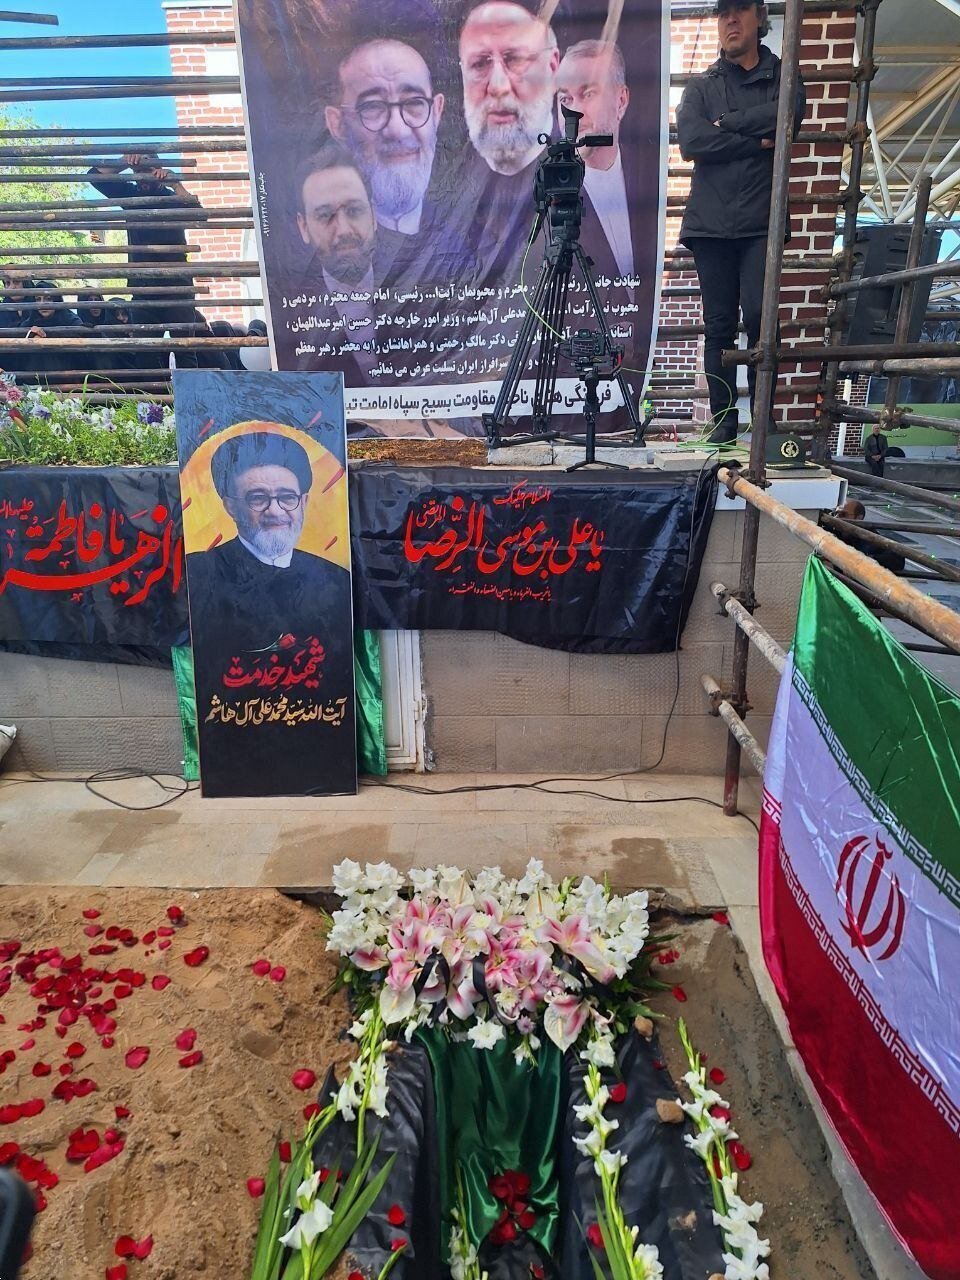 عکس | اولین تصویر از مزار شهید آل هاشم پس از خاکسپاری